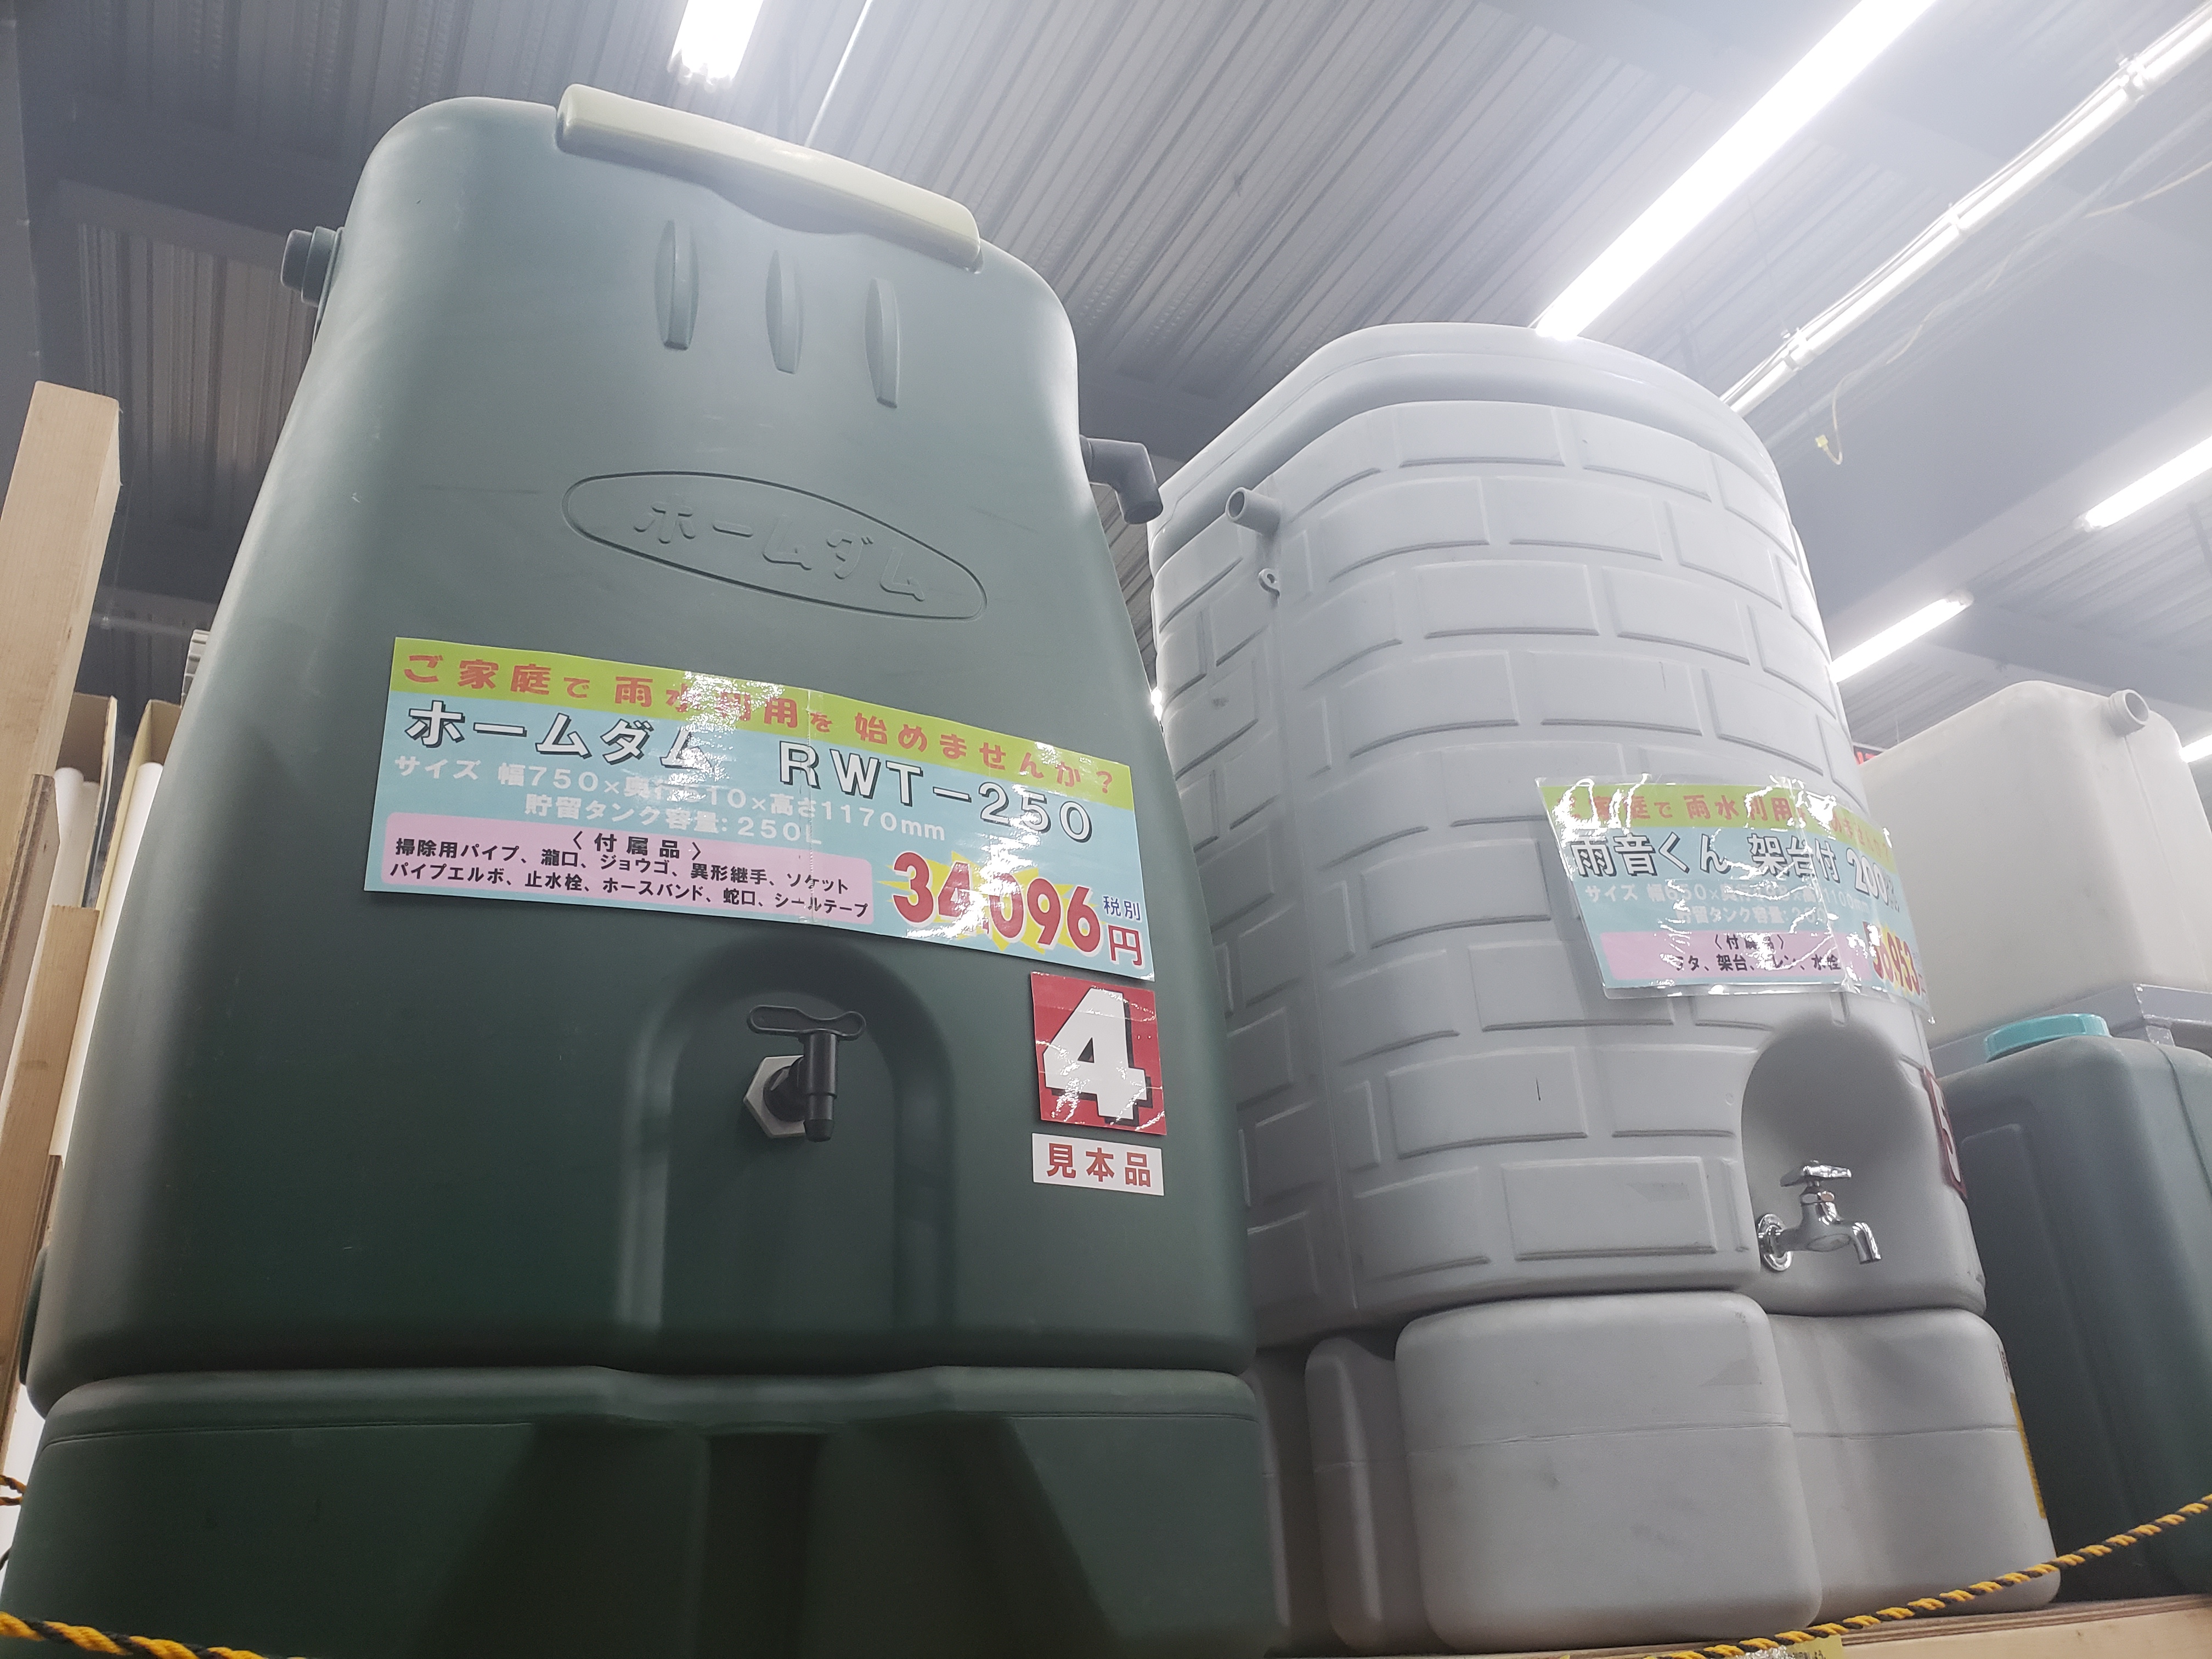 빗물을 재활용하는 물저장 탱크를 구입 설치하면 비용의 일정액을 지원하는 일본지방자치제